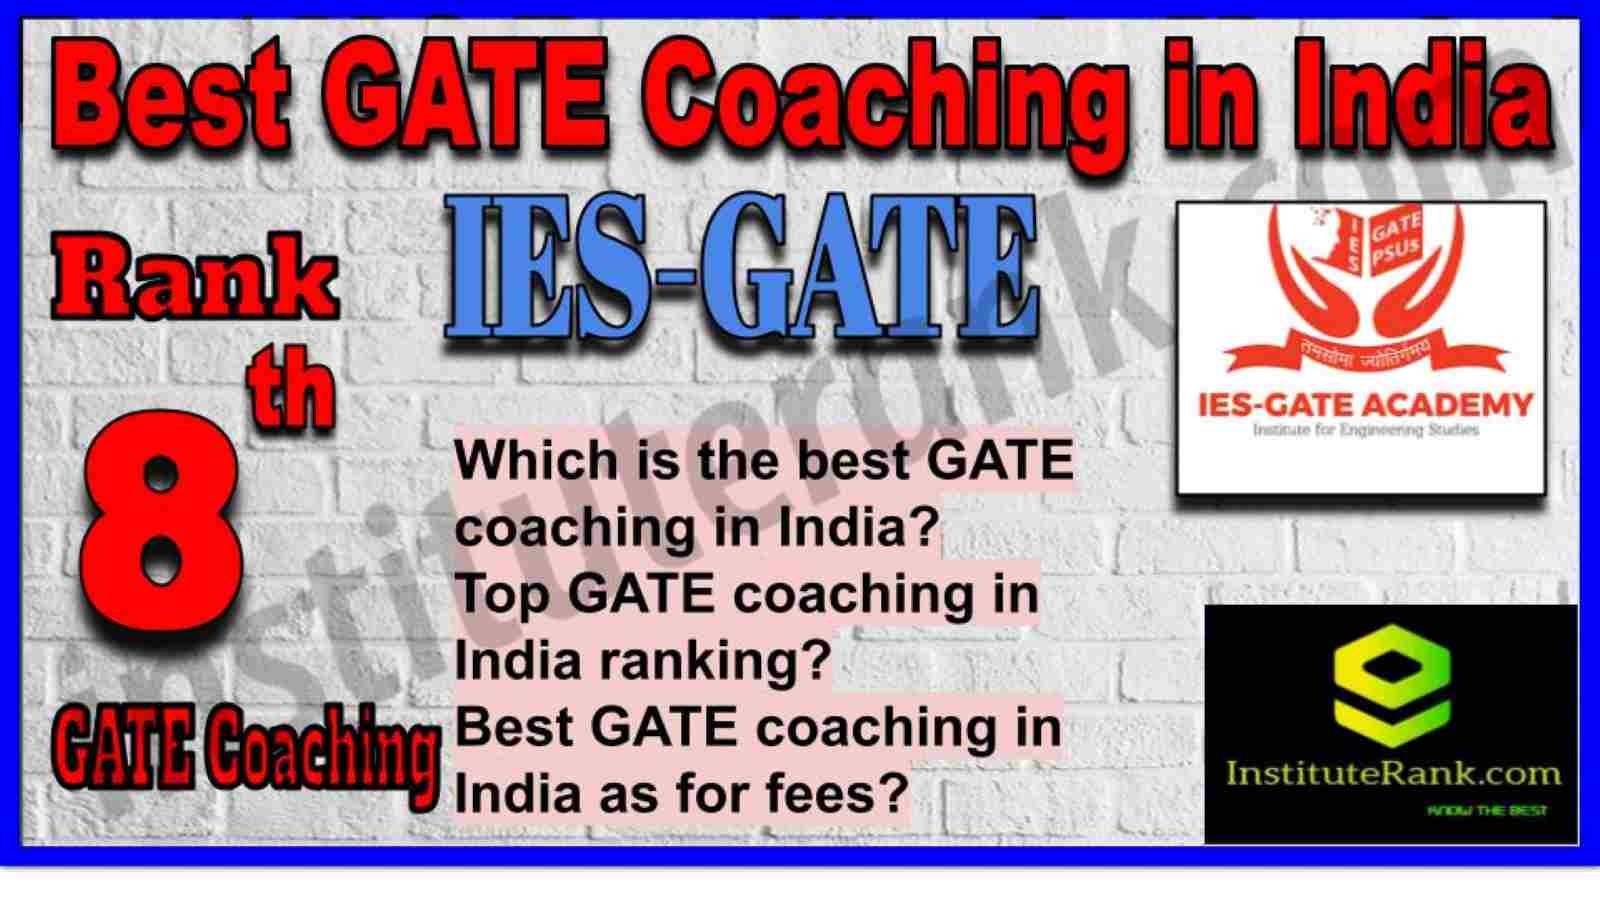 8 Best GATE Coaching in India